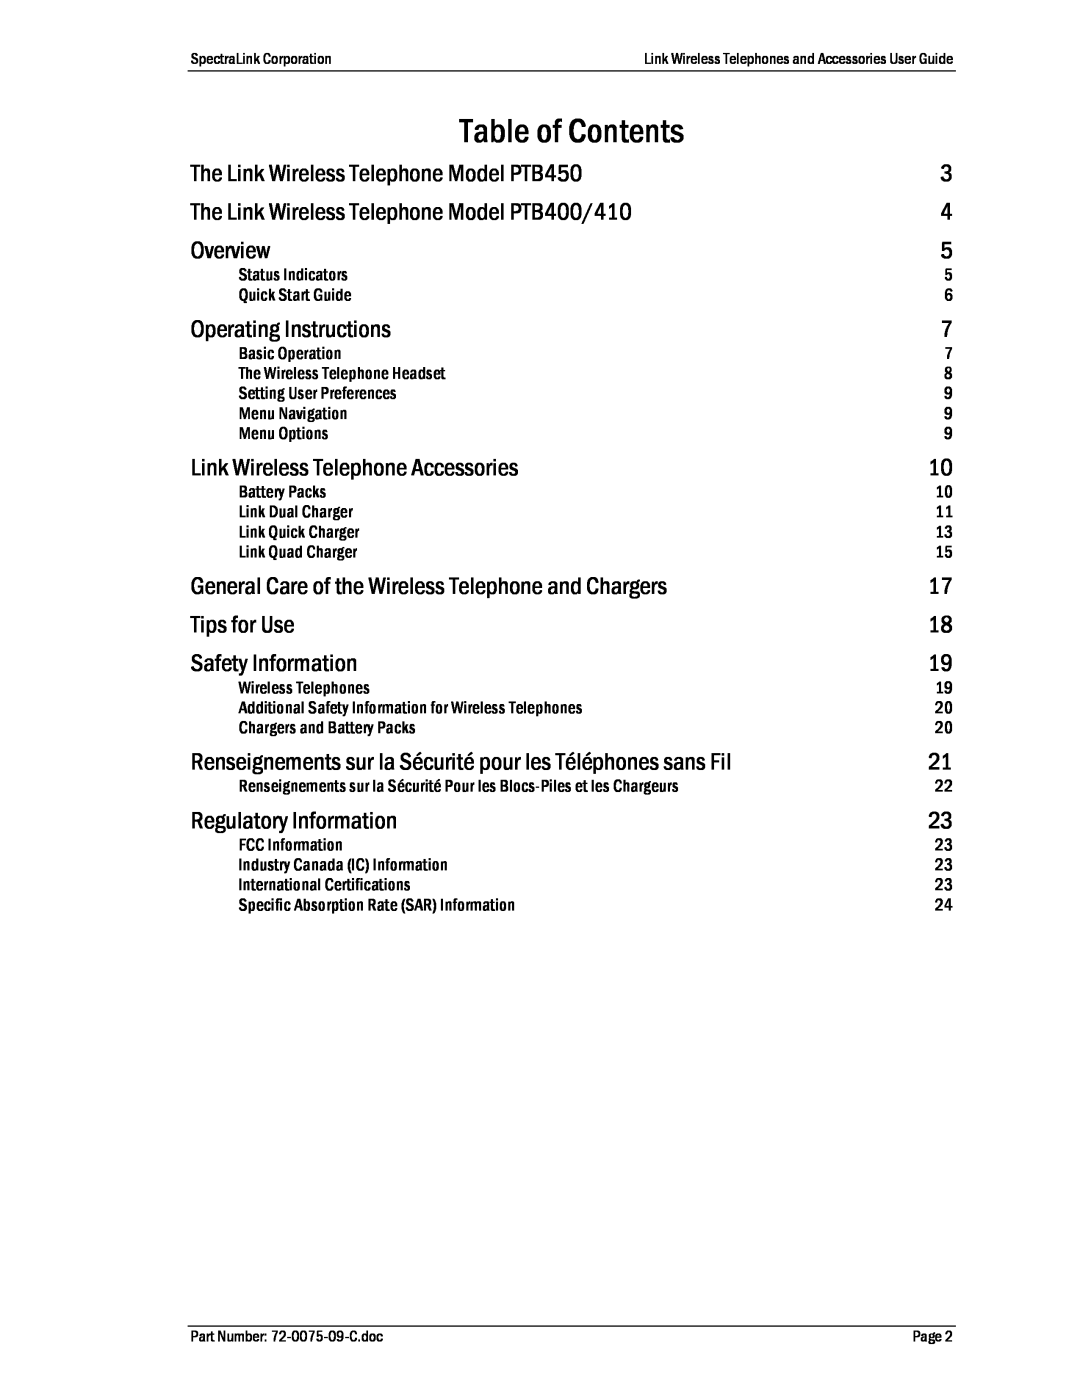 Polycom PTQ360, PTS360, BC4900, PTB410, PTB450, PTC400, PTB400 manual Table of Contents 